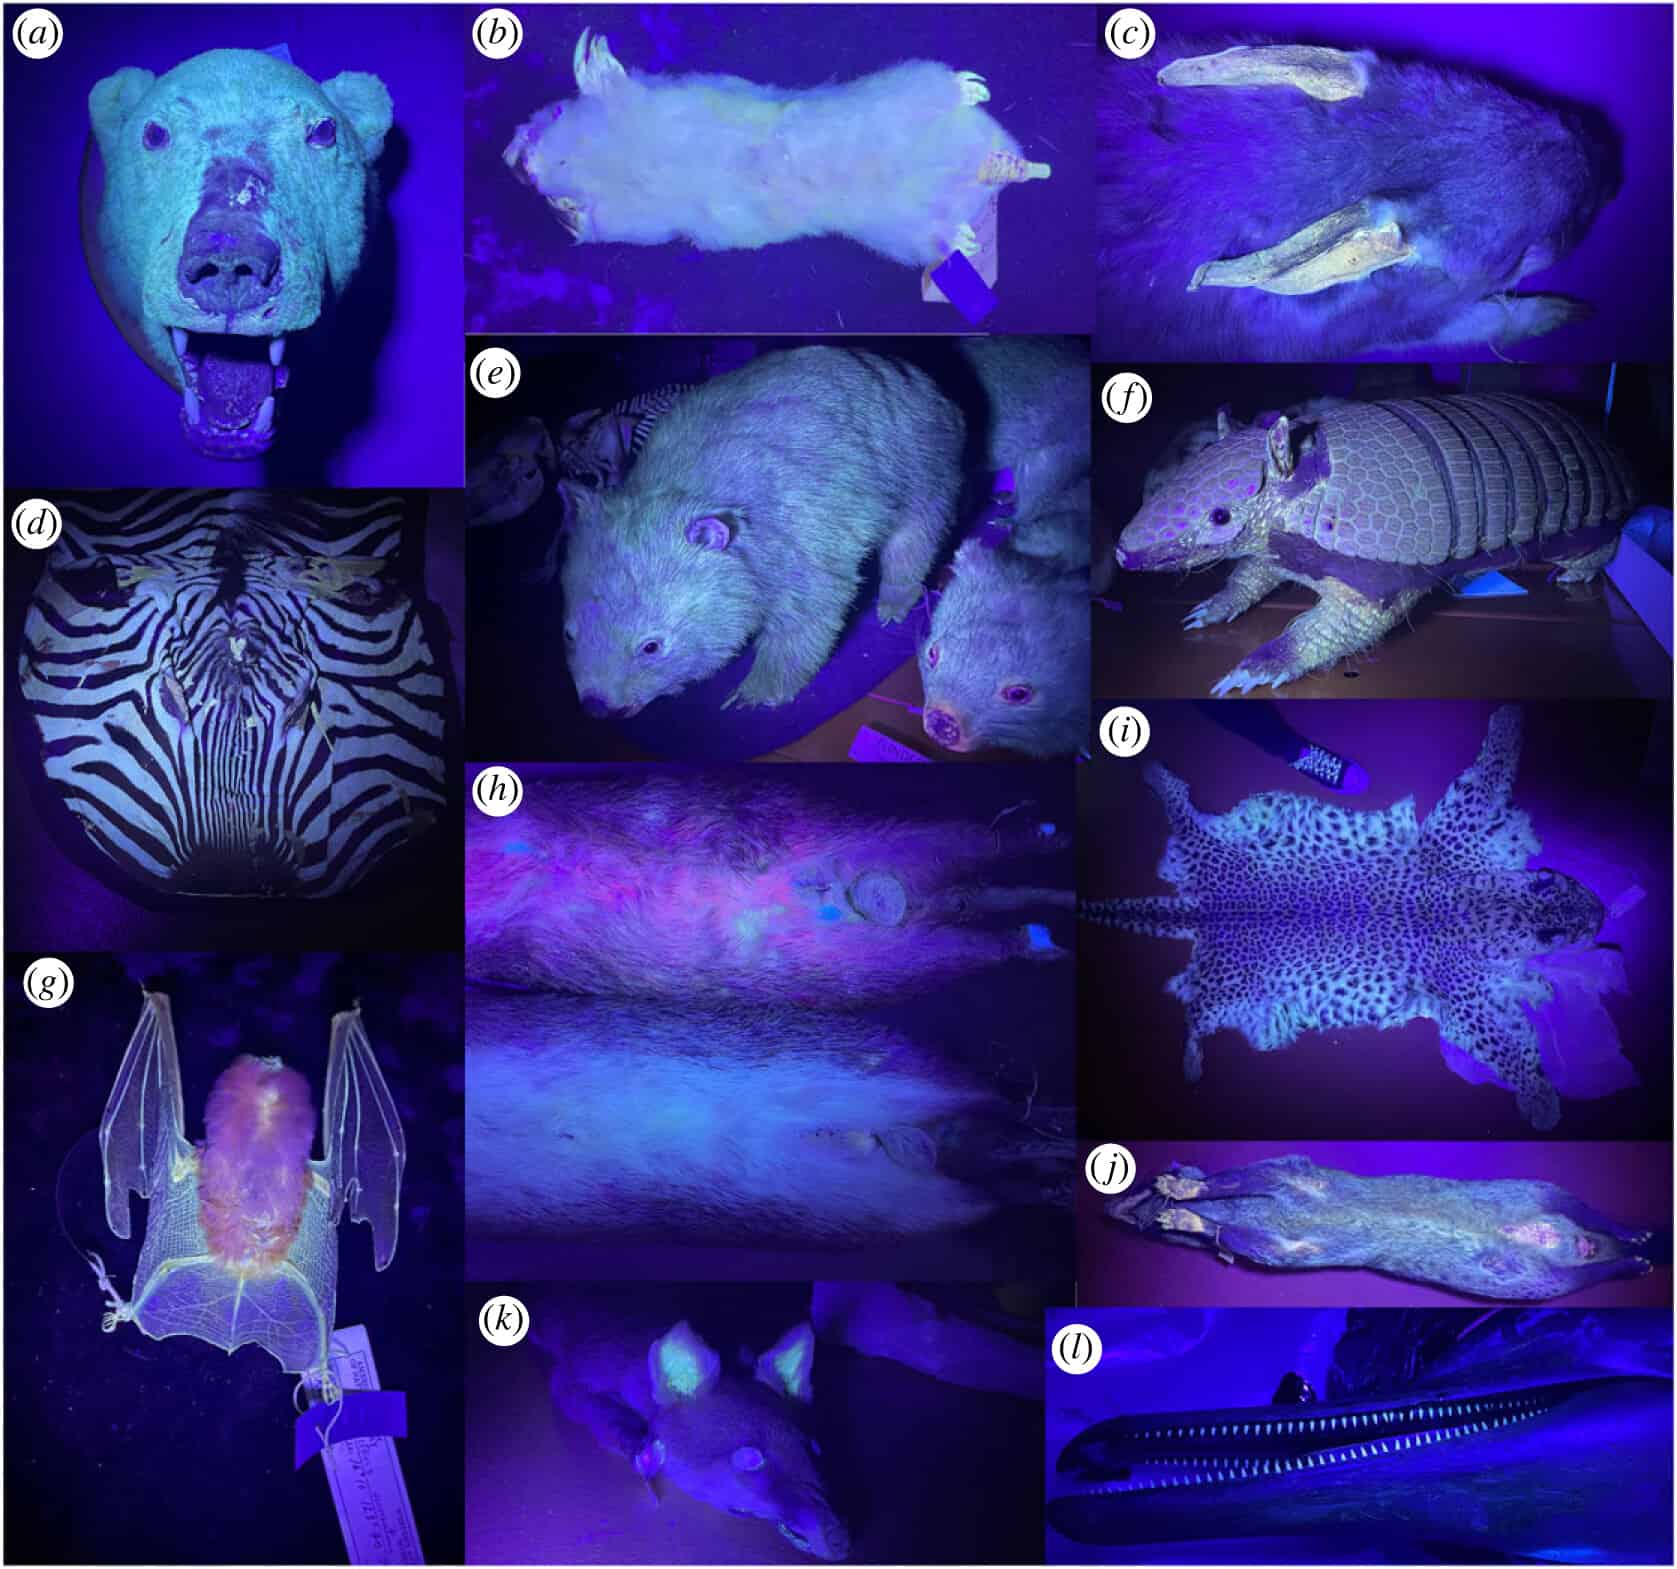 Los mamíferos fluorescentes son más comunes de lo que pensábamos; incluso los gatos lo hacen